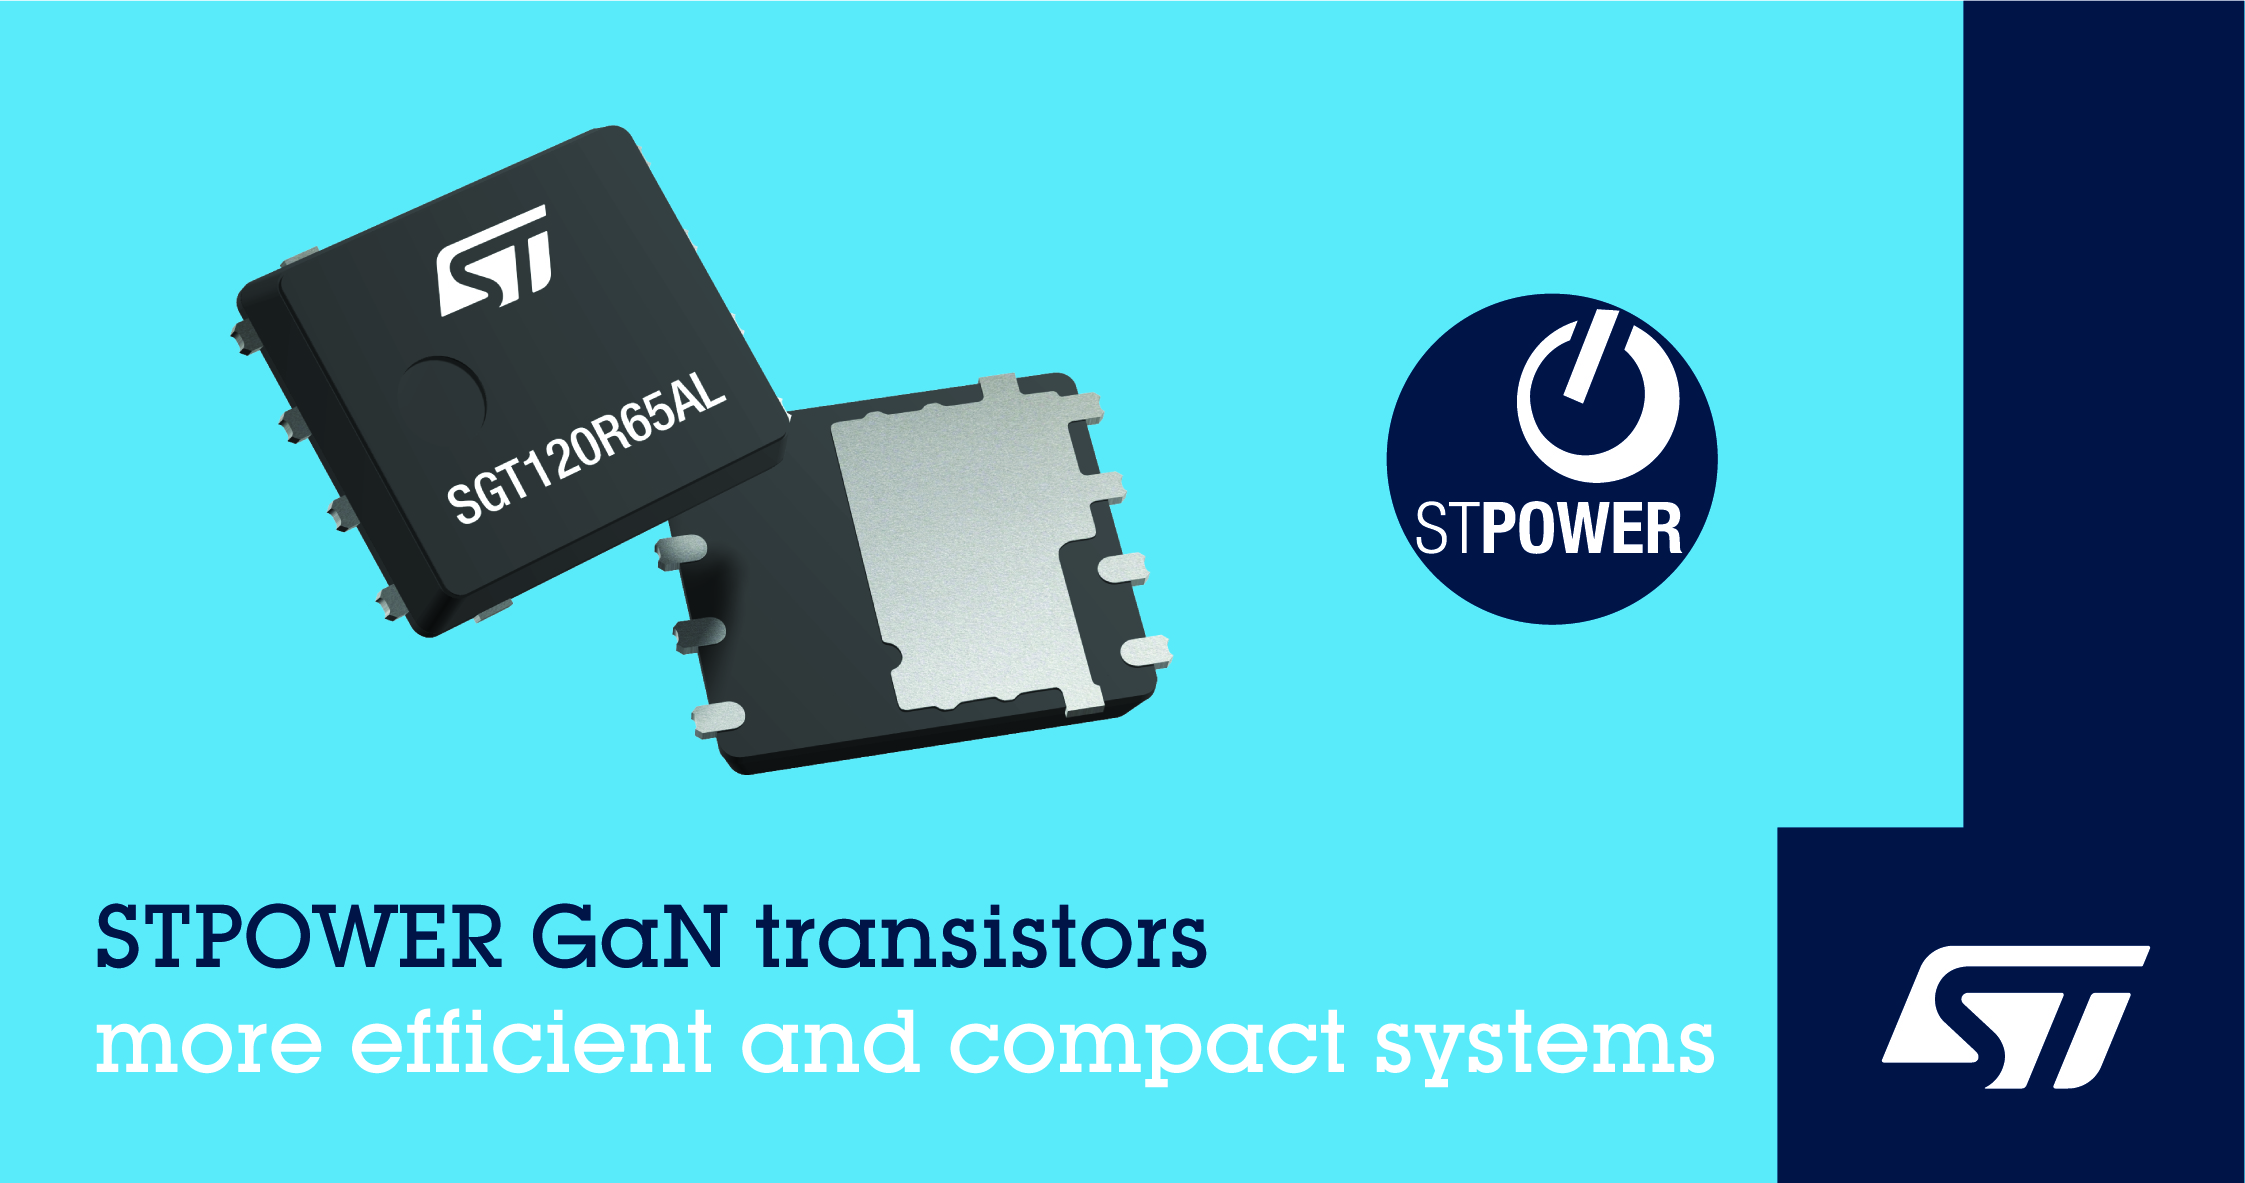 意法半导体氮化镓功率半导体PowerGaN系列首发，让电源能效更高、体积更纤薄